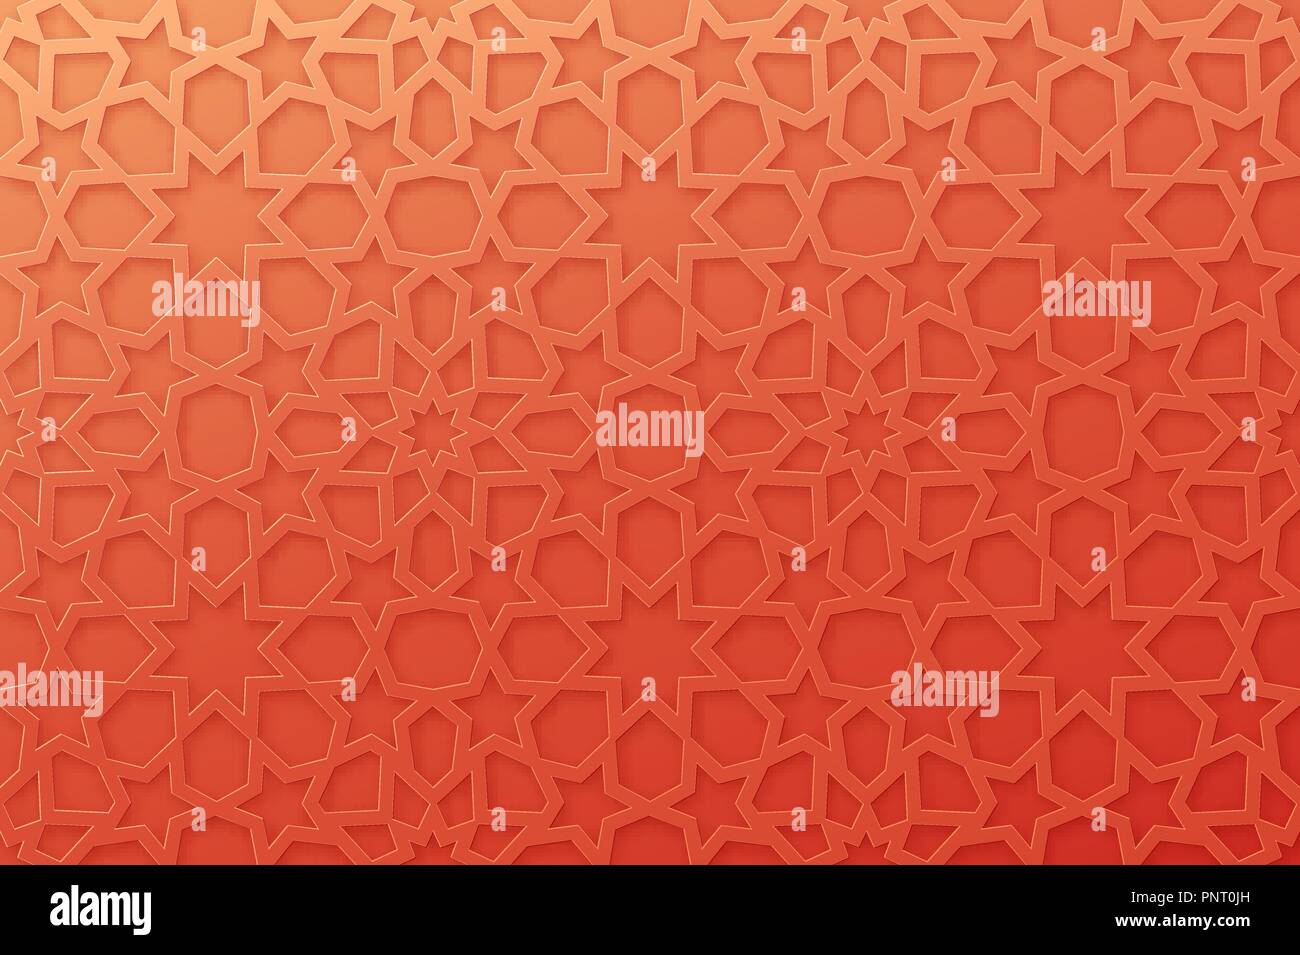 Arabisch Muster Hintergrund. Islamische ornament Vektor. Geometrische 3D-Form. Textur 1001 traditionelles Motiv Stock Vektor